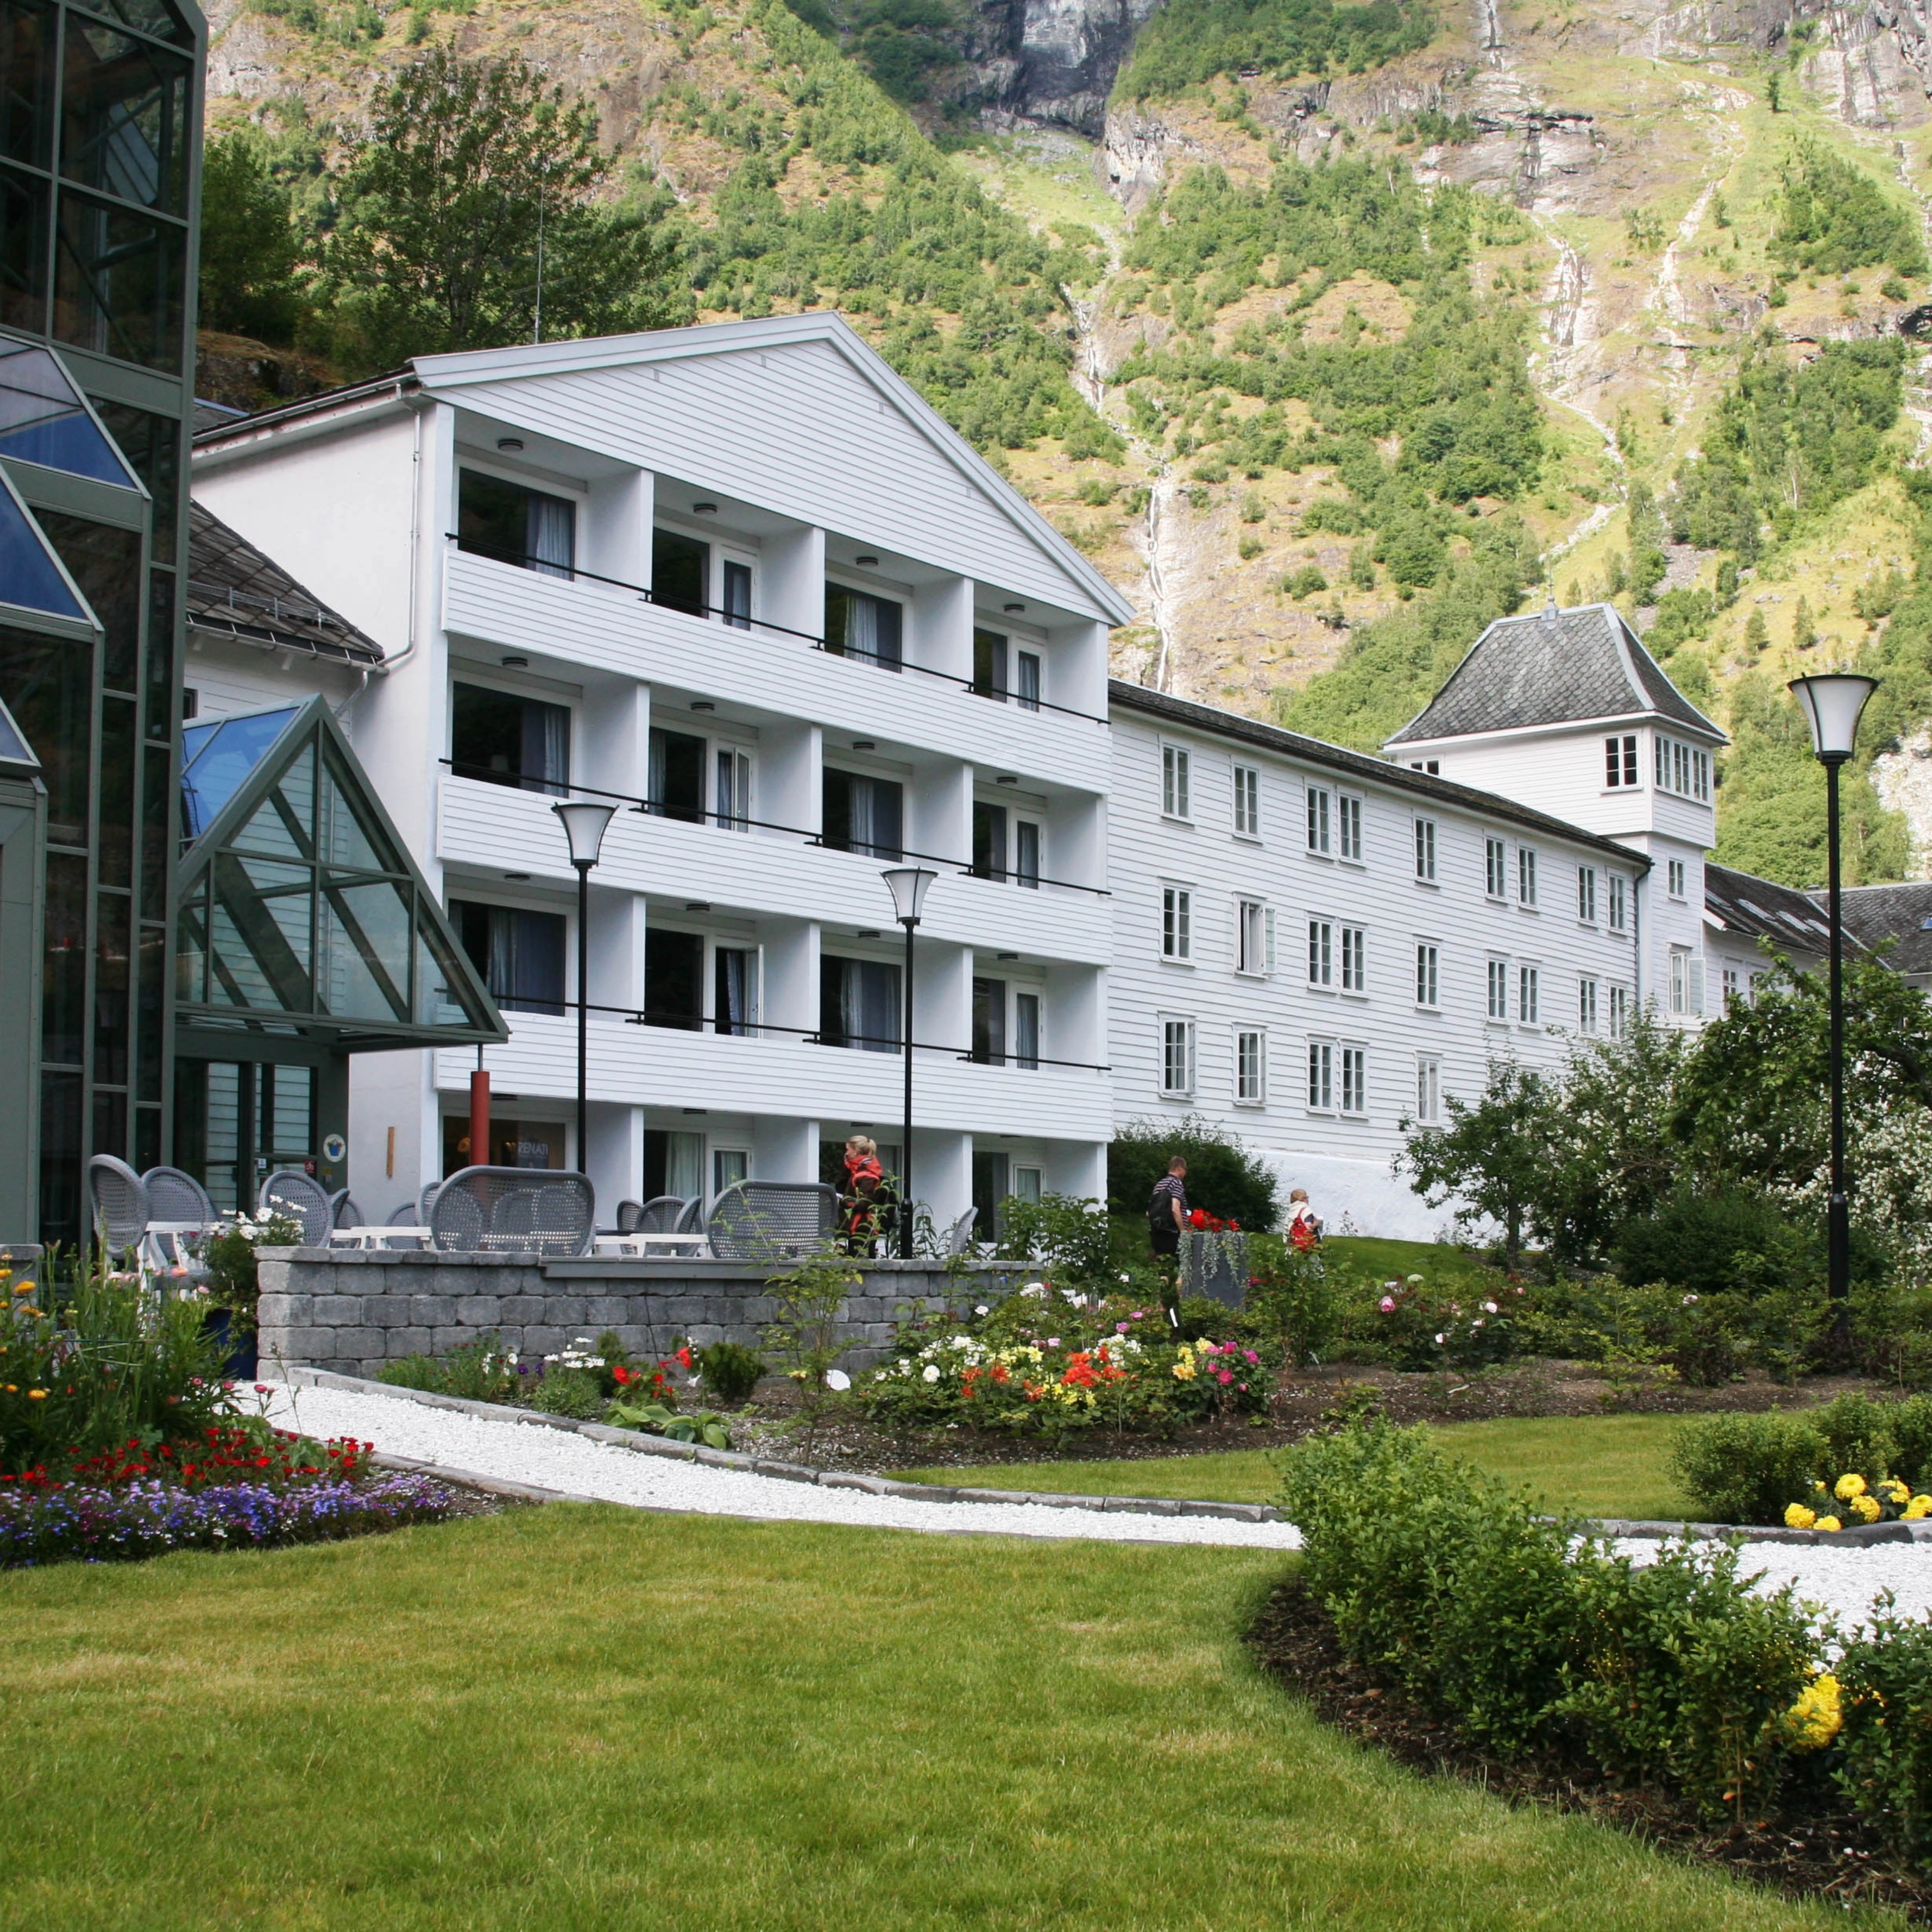 Fretheim Hotel - Flåm, Norway